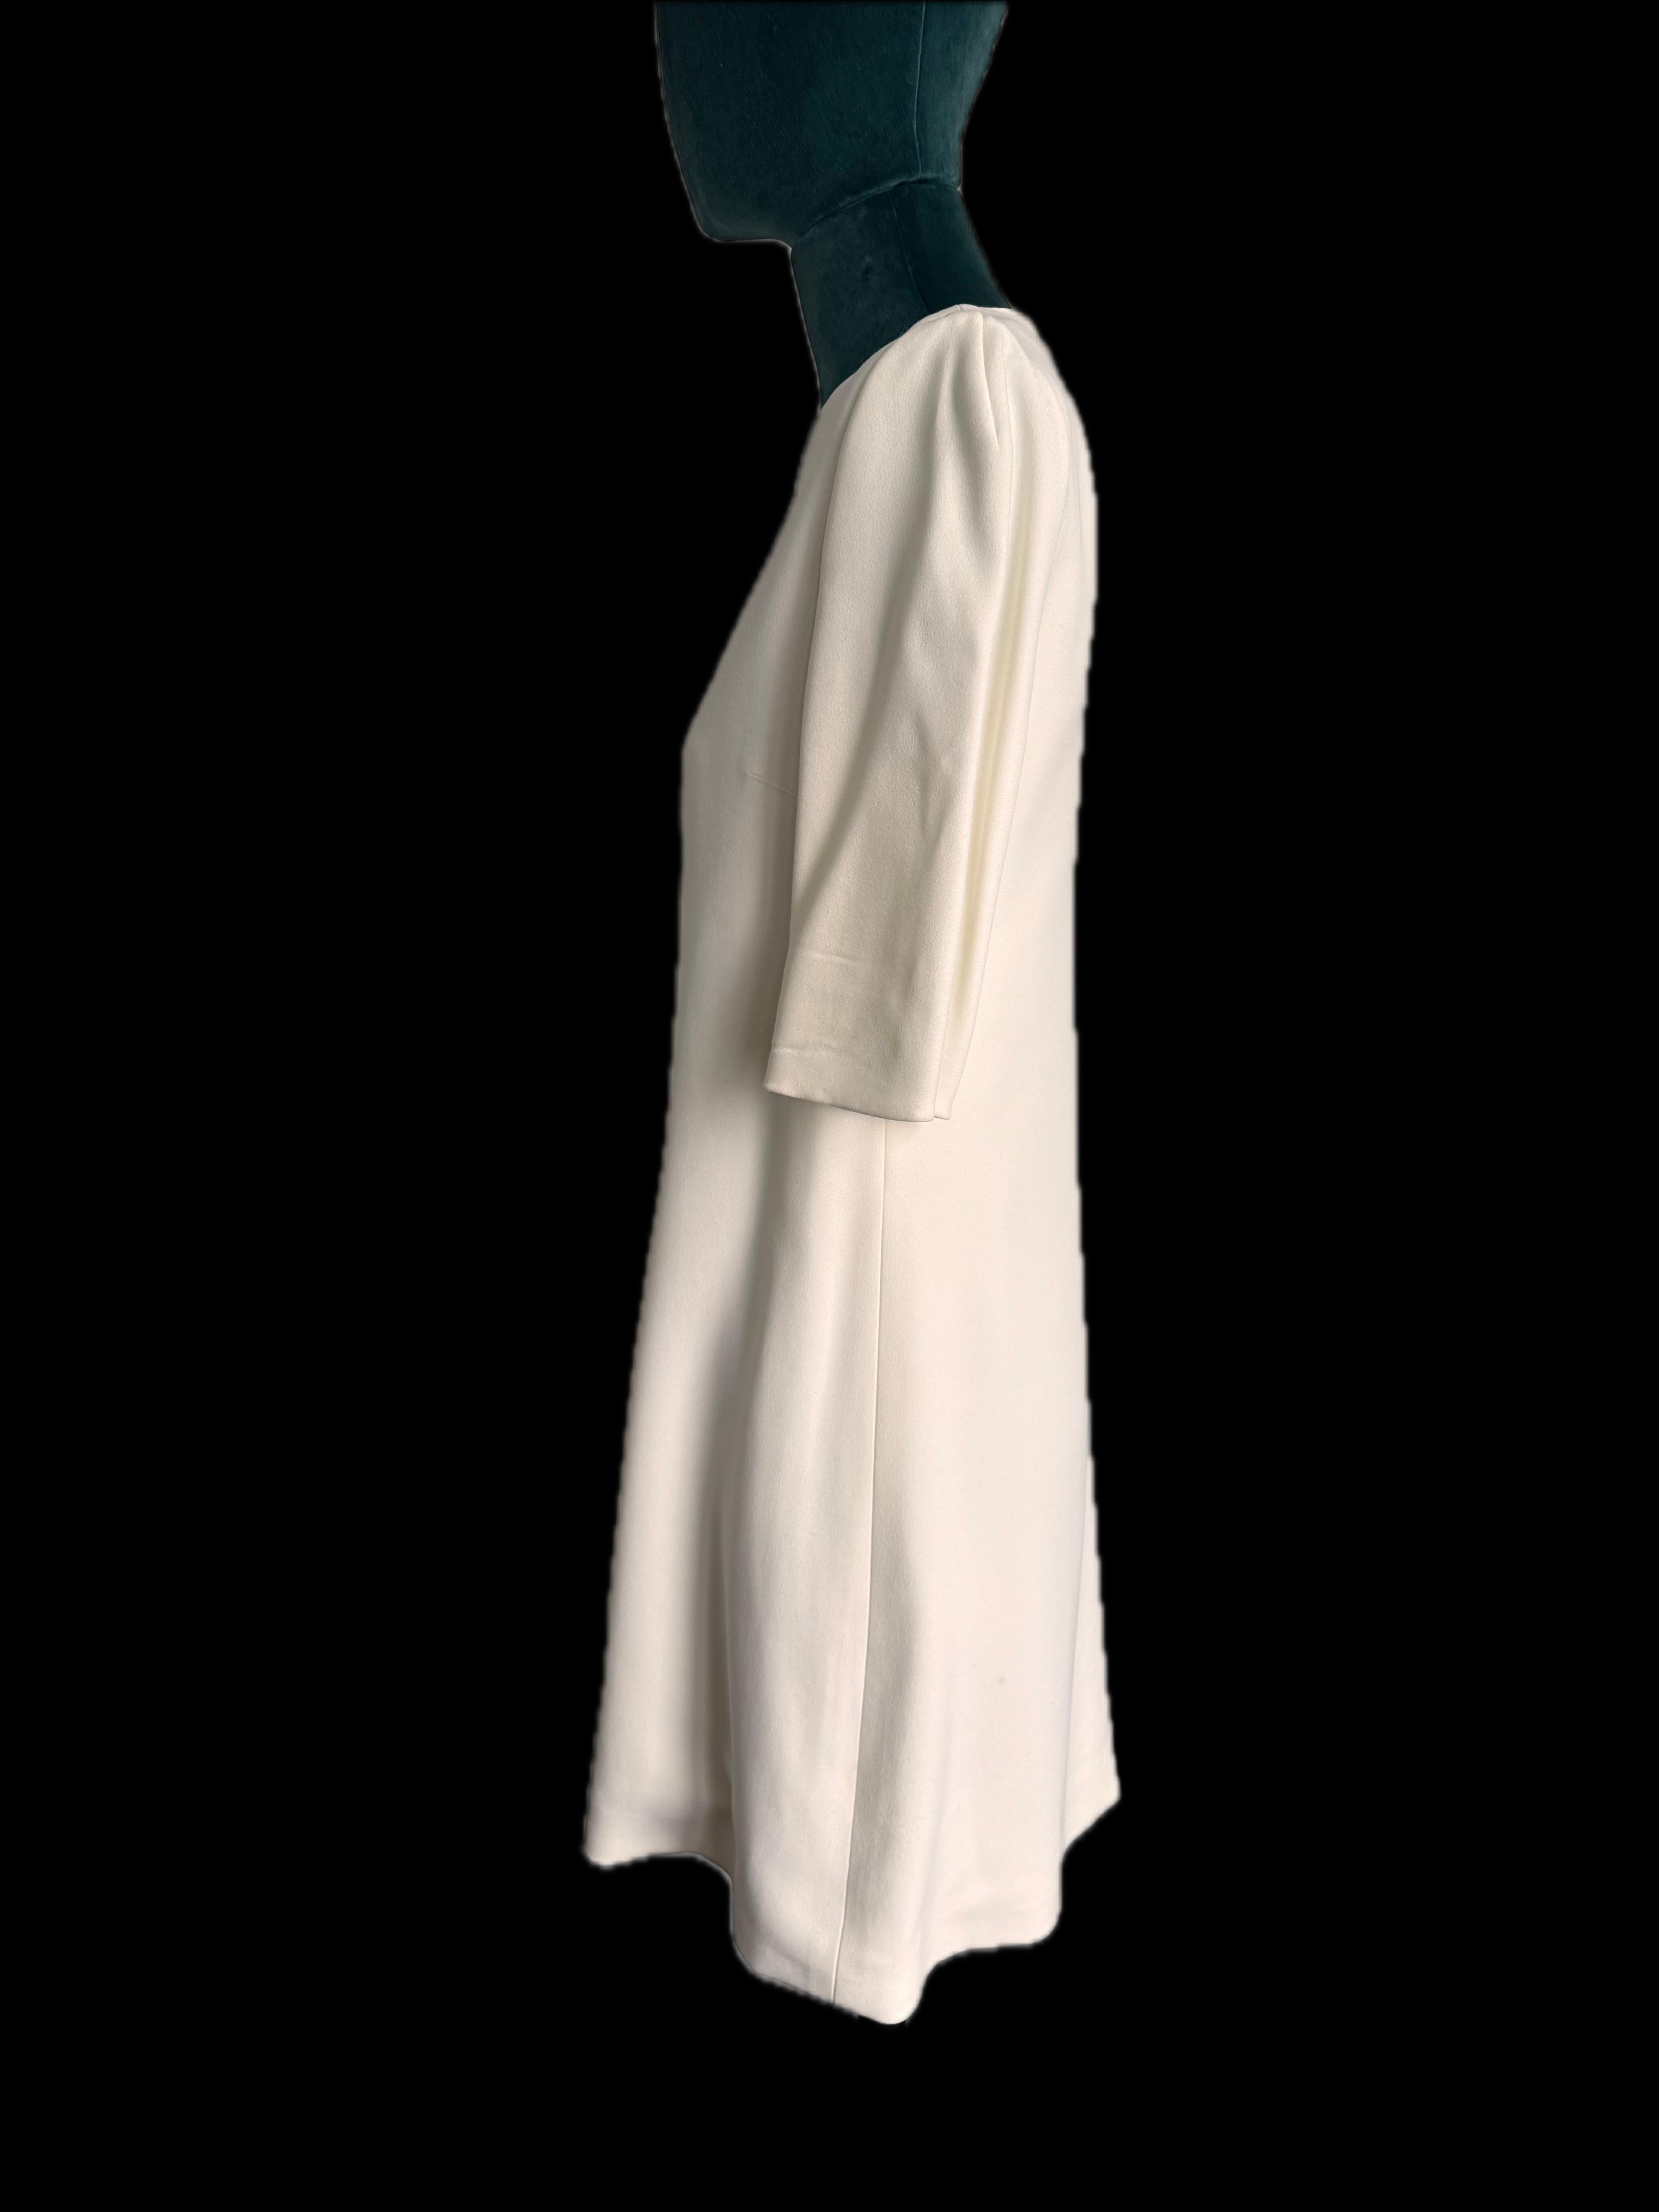 Zeitlose Eleganz mit dem Dolce & Gabbana Classic Short Sleeve Mini Dress in einer raffinierten Cremefarbe. Dieses exquisite Stück in der Größe IT38 und in ausgezeichnetem Zustand verkörpert die kultige Mischung aus italienischer Handwerkskunst und